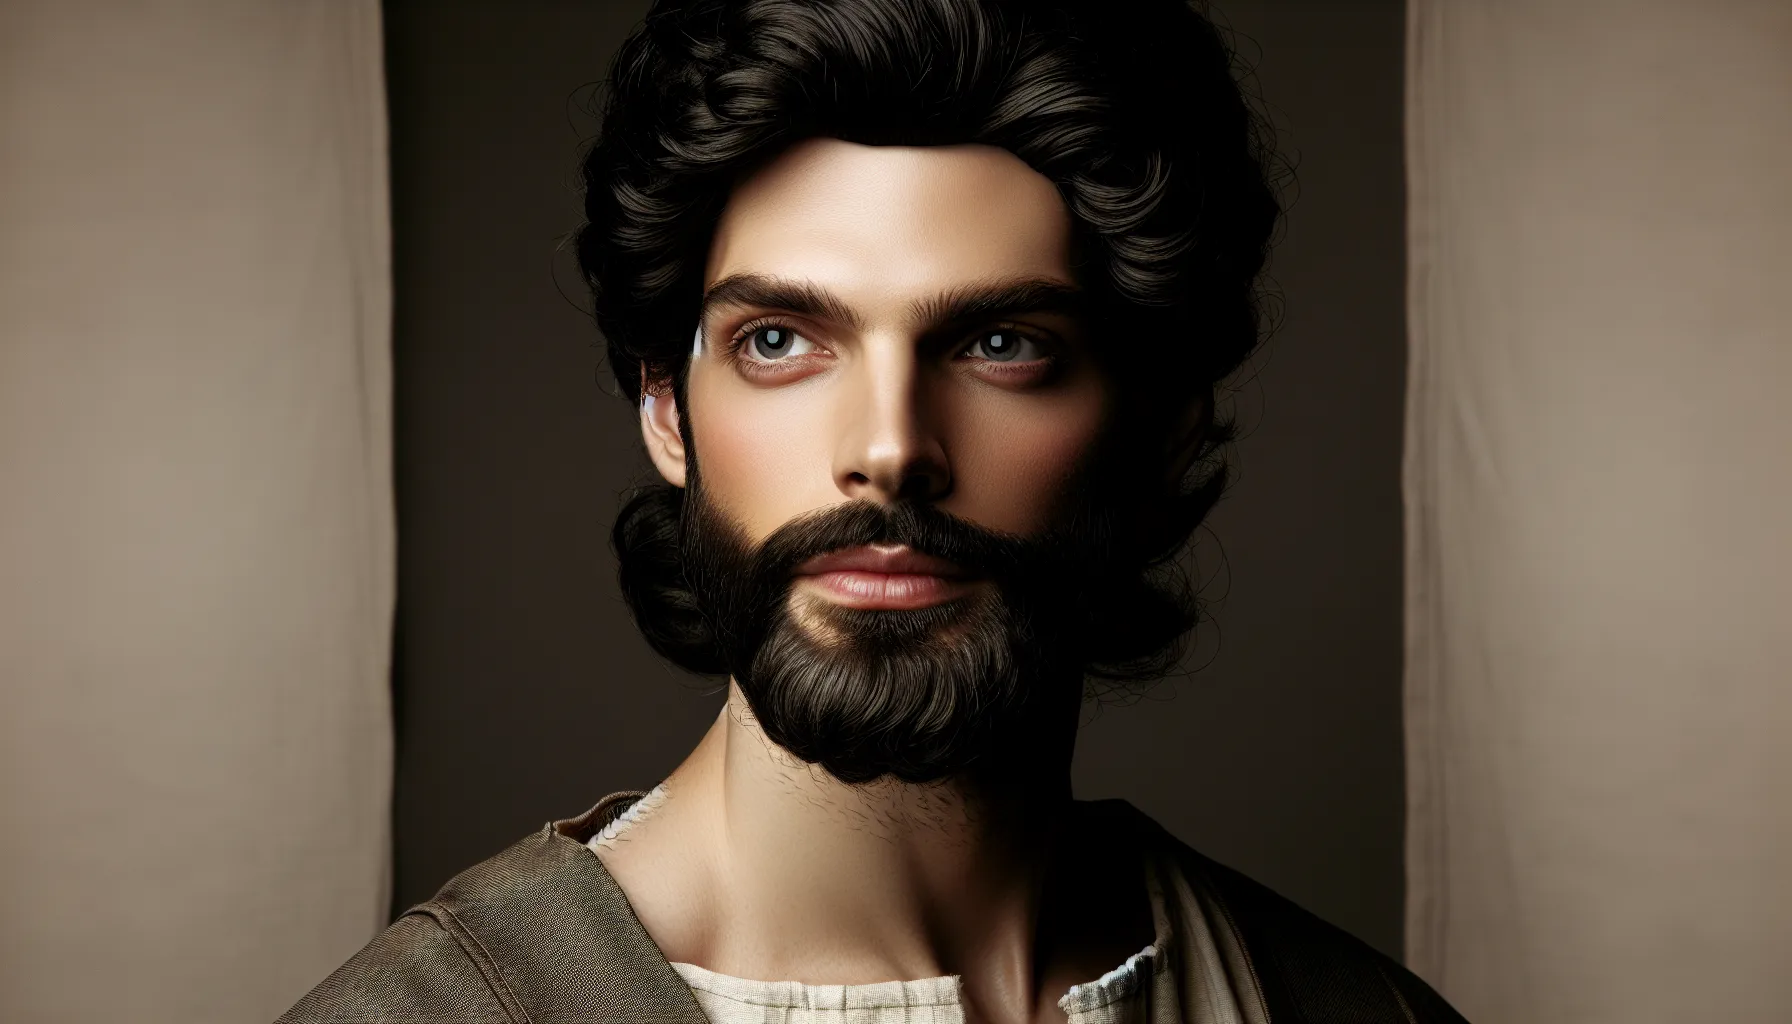 Imagen de un hombre de barba y cabello oscuro, con mirada serena y vestimenta antigua, representando a Adán según la Biblia.